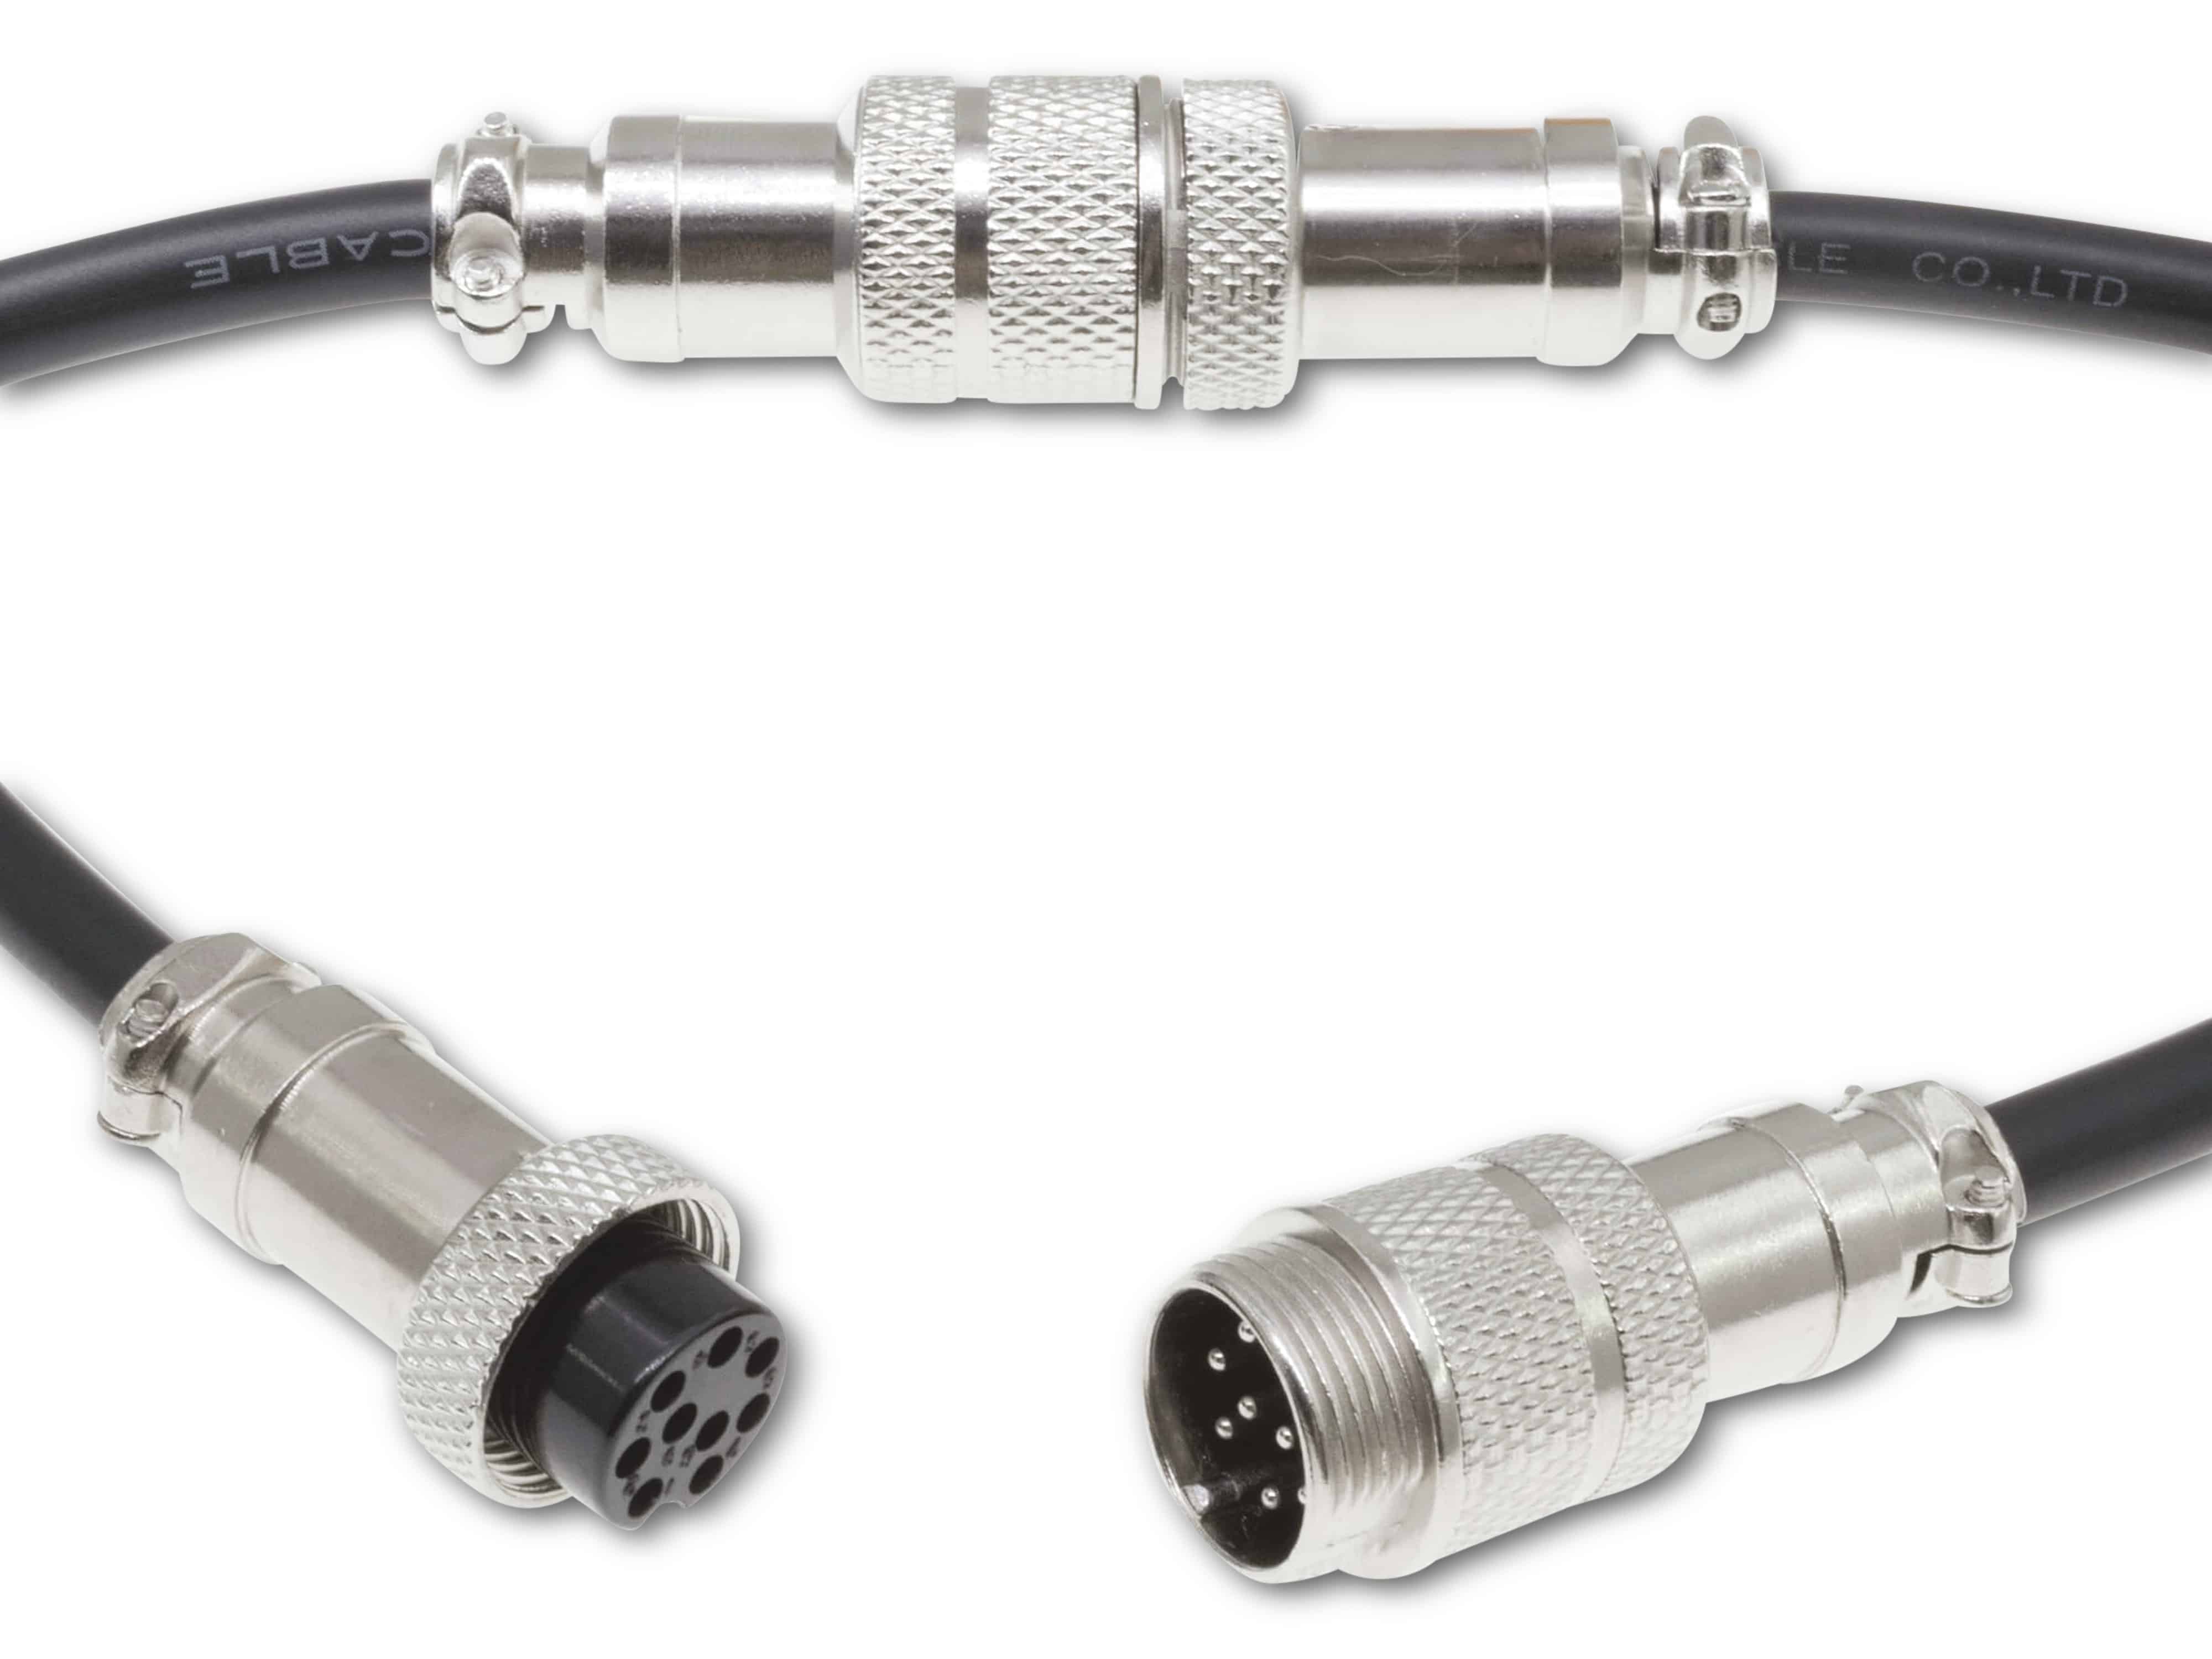 Rundsteckverbinder, 9-polig, 30V, 1A, Lötanschluss, IP55, wire to wire, 1 Stecker + 1 Buchse